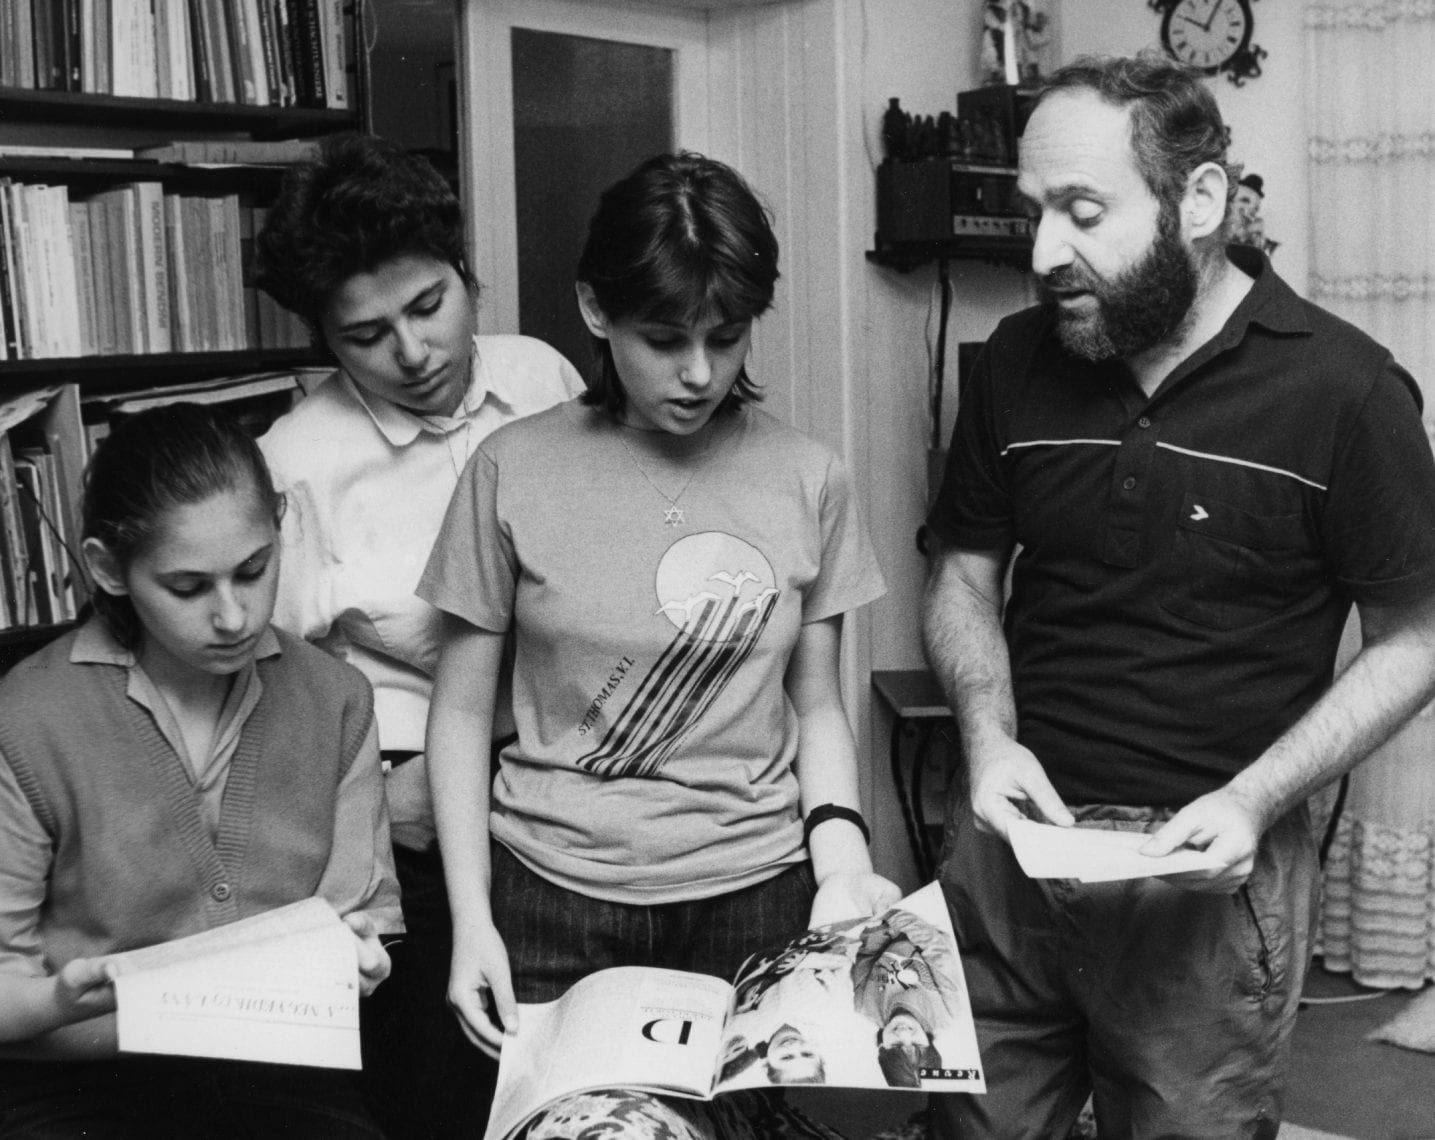 מימין לשמאל: לסלו, סופיה, סוזן ויהודית פולגר (ויקיפדיה)